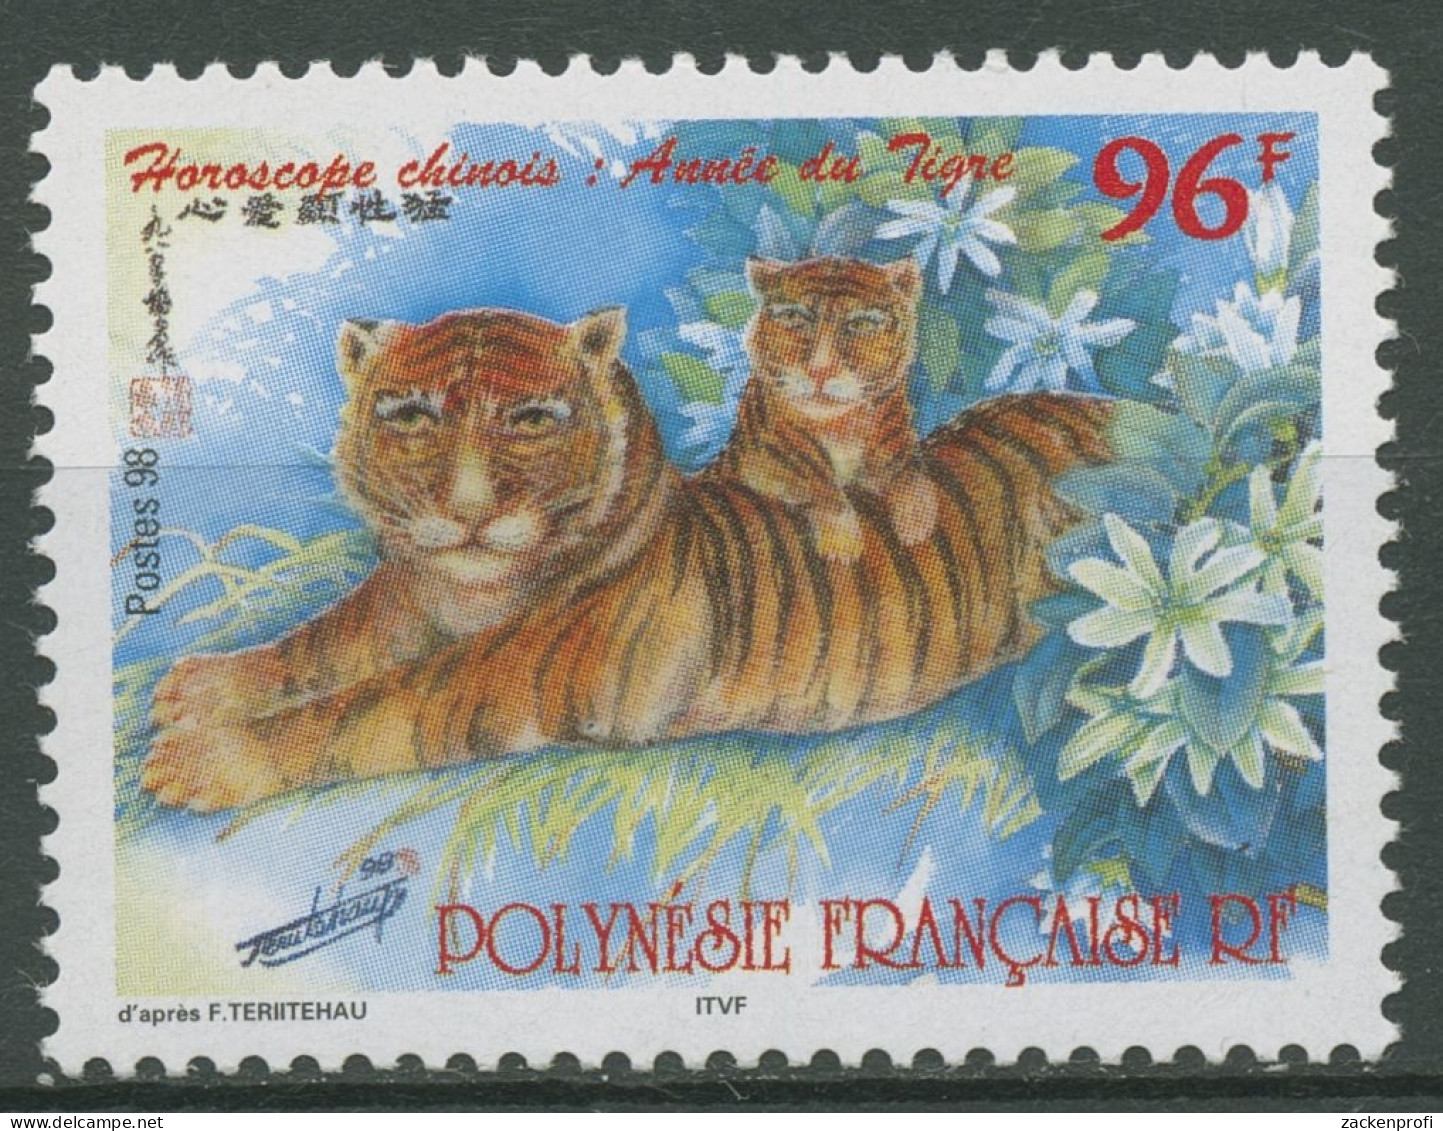 Französisch-Polynesien 1998 Chin. Neujahr Jahr Des Tigers 755 Postfrisch - Ongebruikt